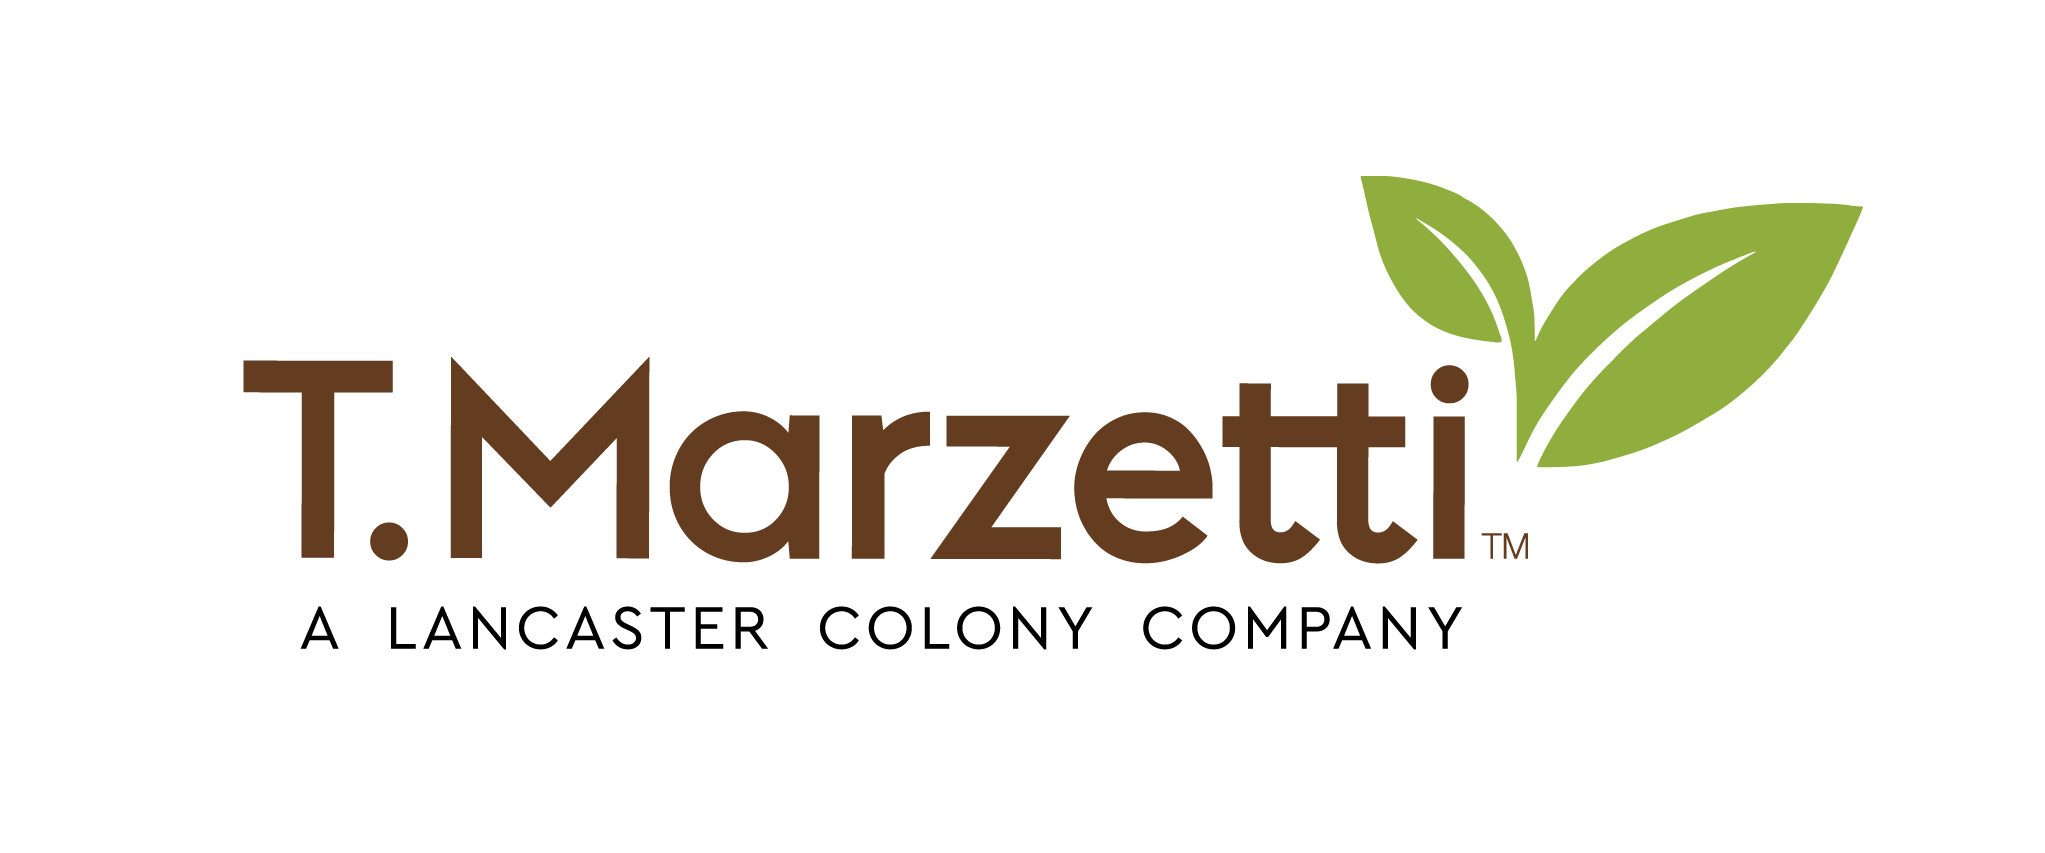 T. Marzetti, A Lancaster Colony Company